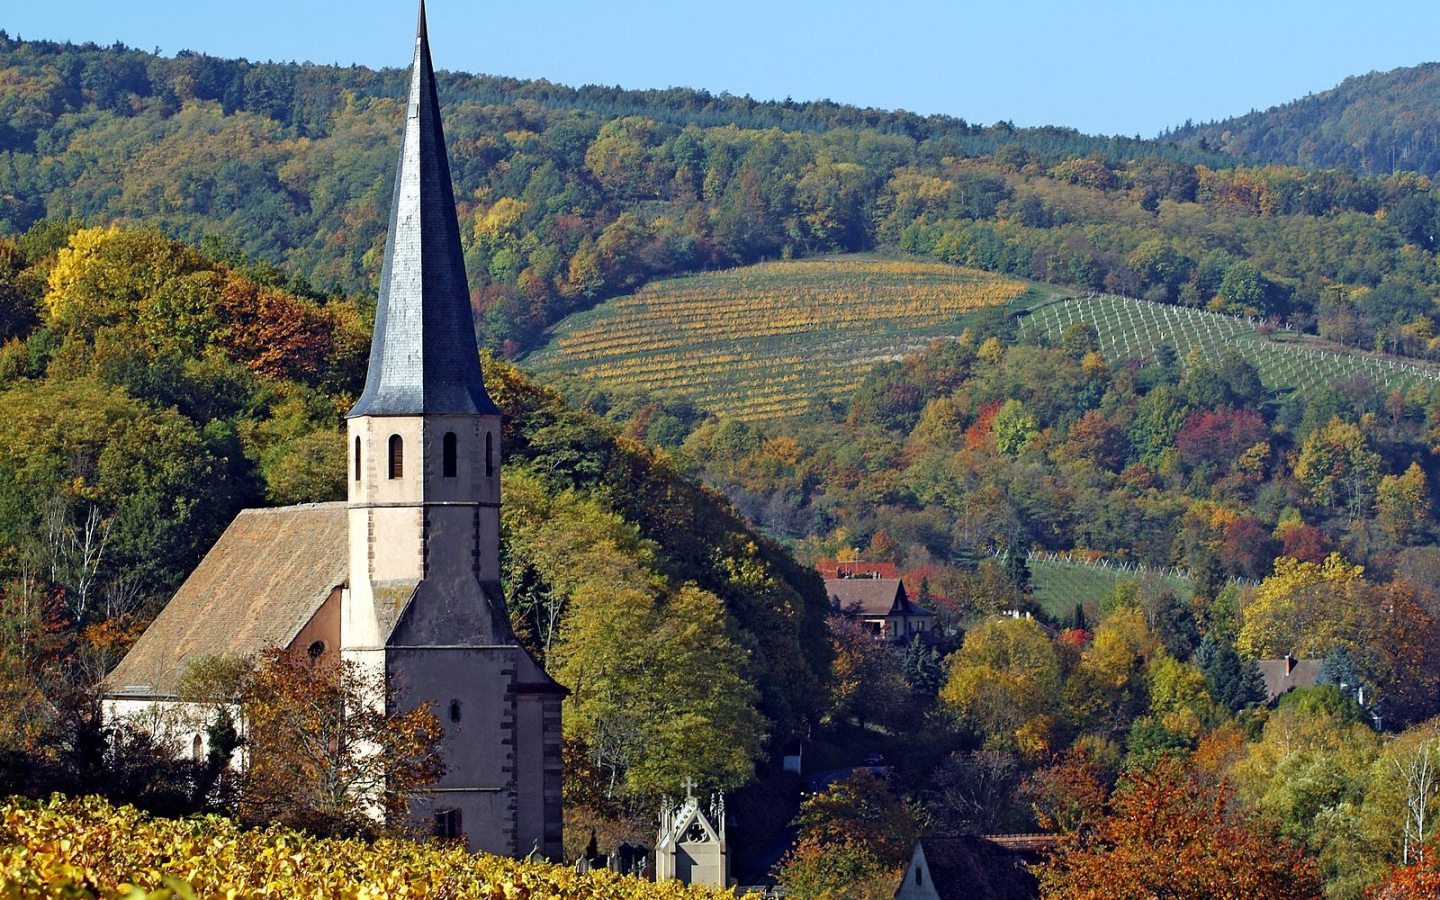 Церковь в Эльзасе, Франция